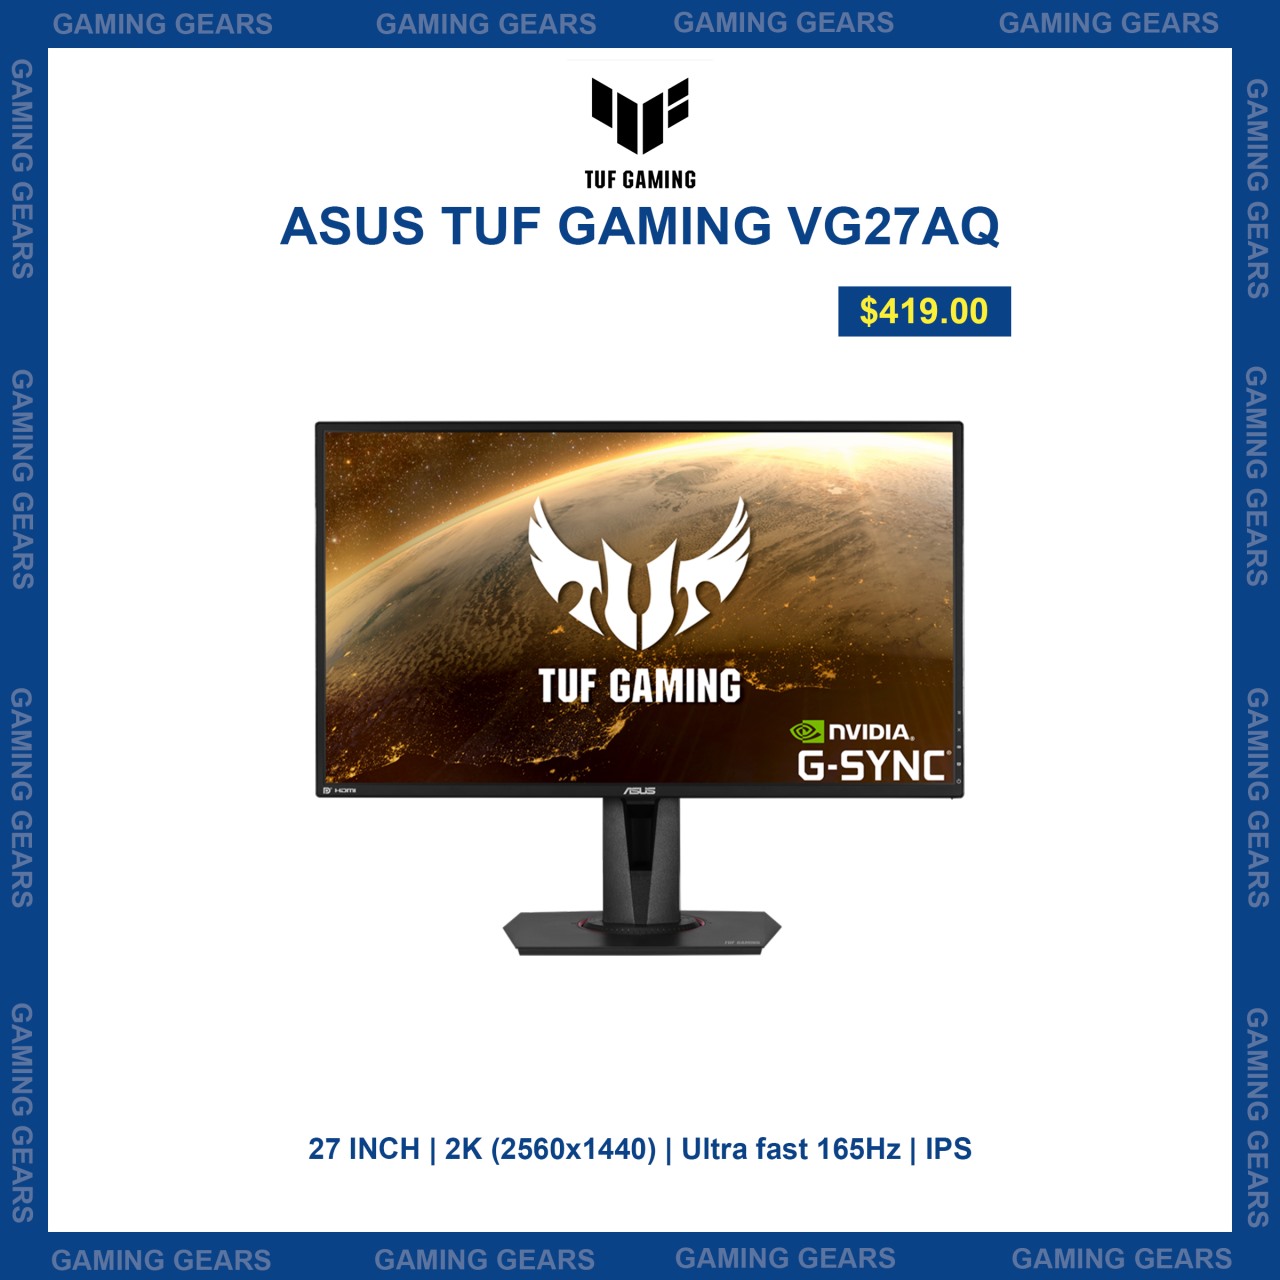 ASUS TUF Gaming VG27AQ - Gaming Gears - Best Gaming Gears Shop in